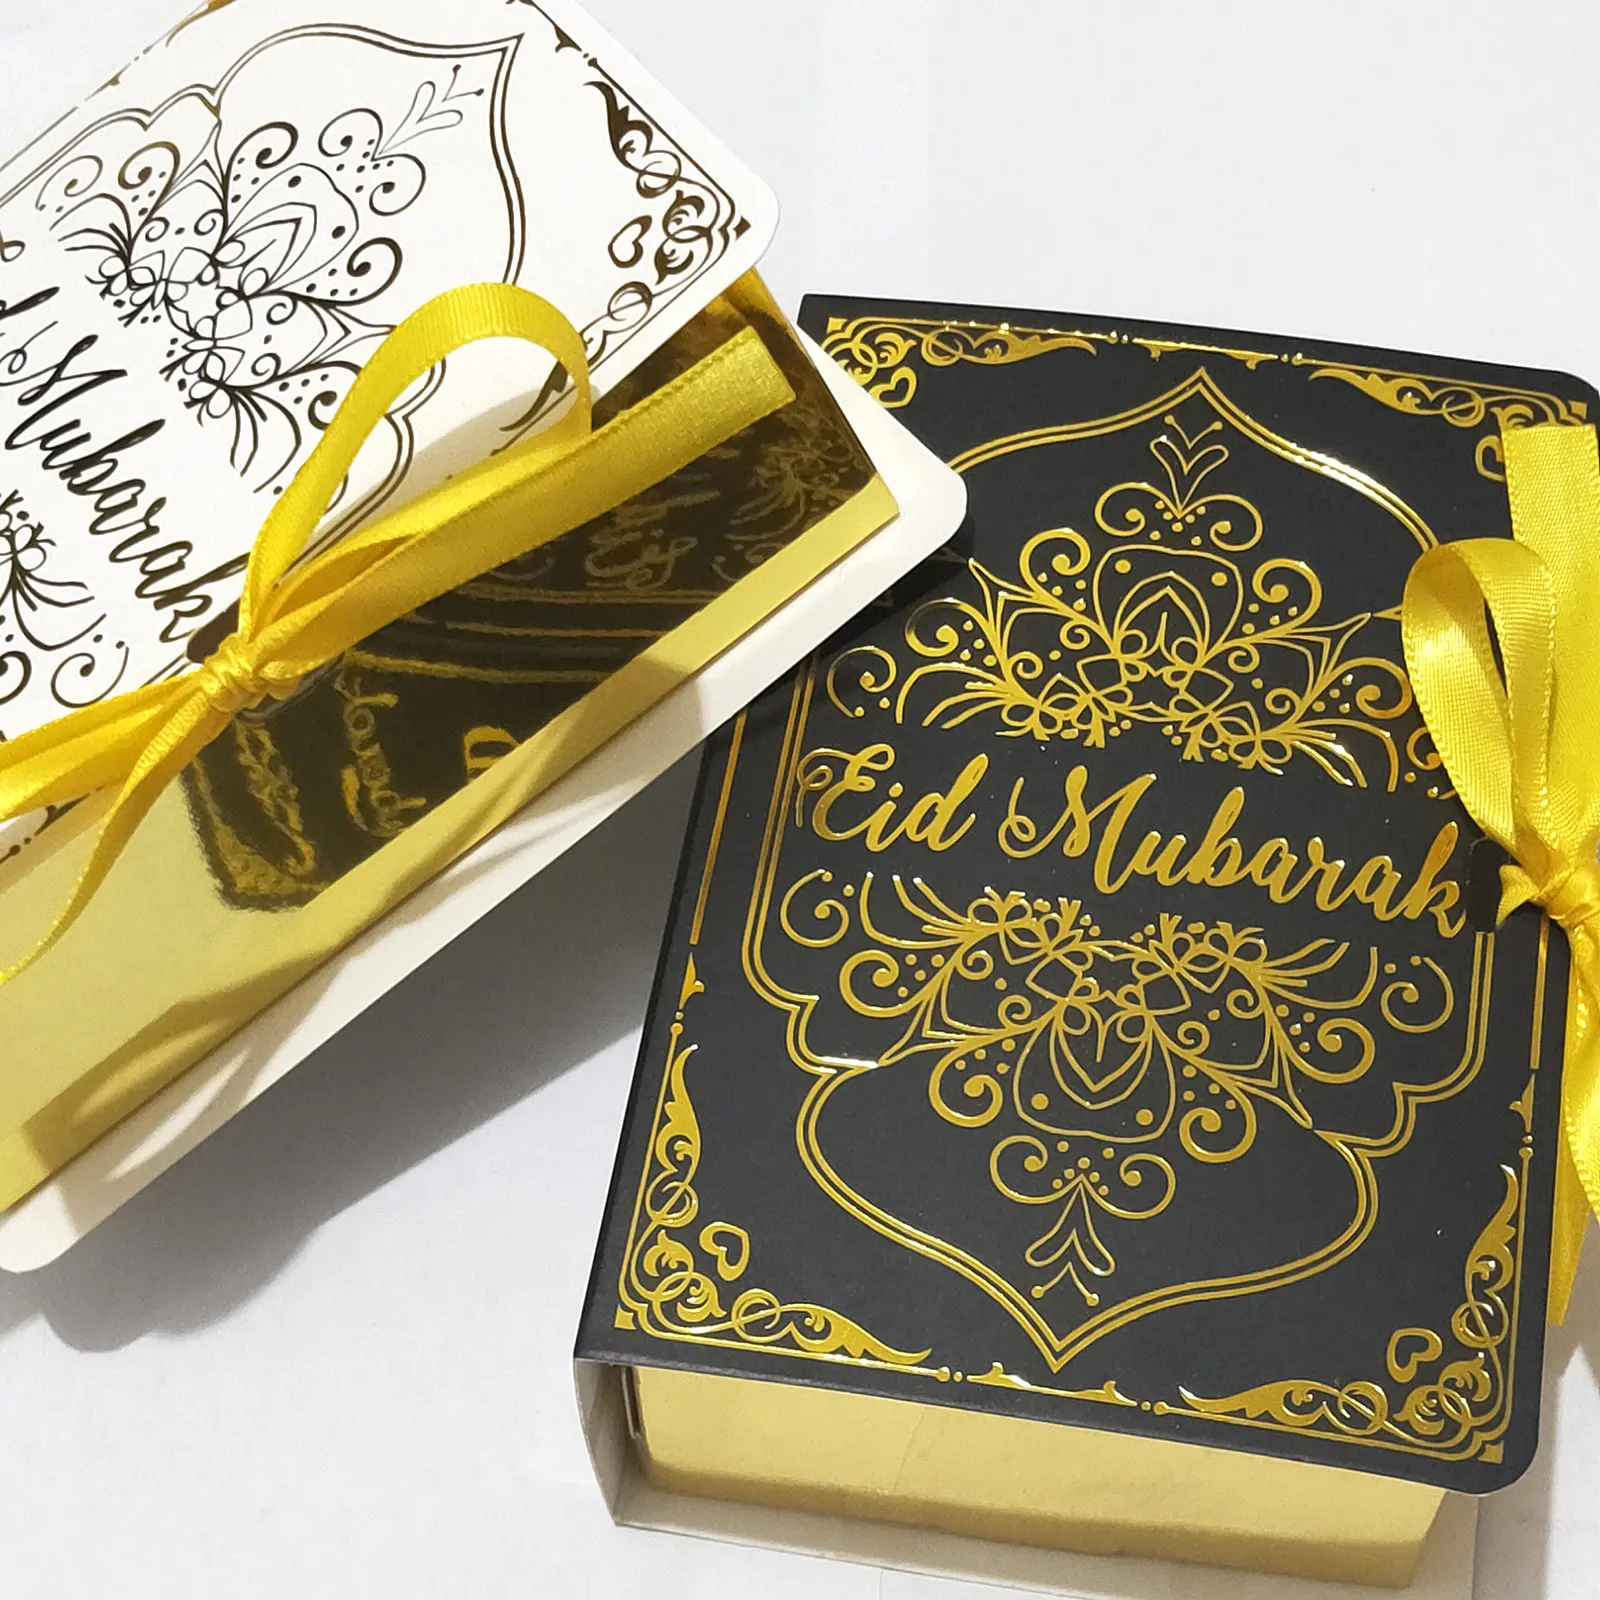 กล่องของขวัญกระดาษฟอยล์สำหรับมุสลิมพร้อมริบบิ้นสีทองกล่องของขวัญทรงหนังสือสุดสร้างสรรค์